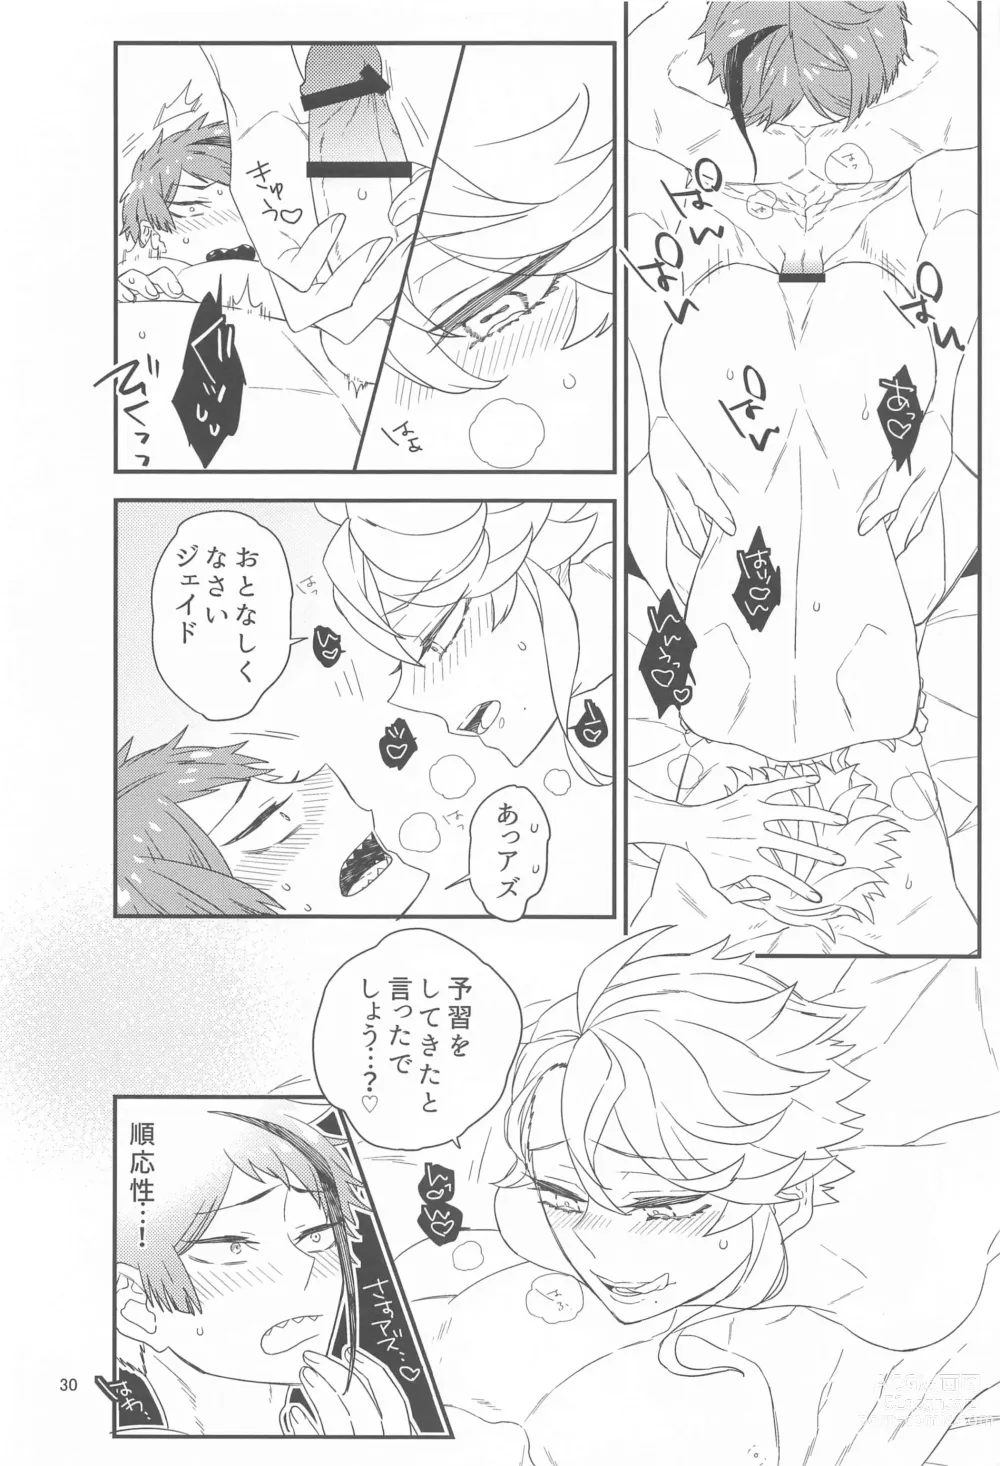 Page 29 of doujinshi Please Don’t Run Away!